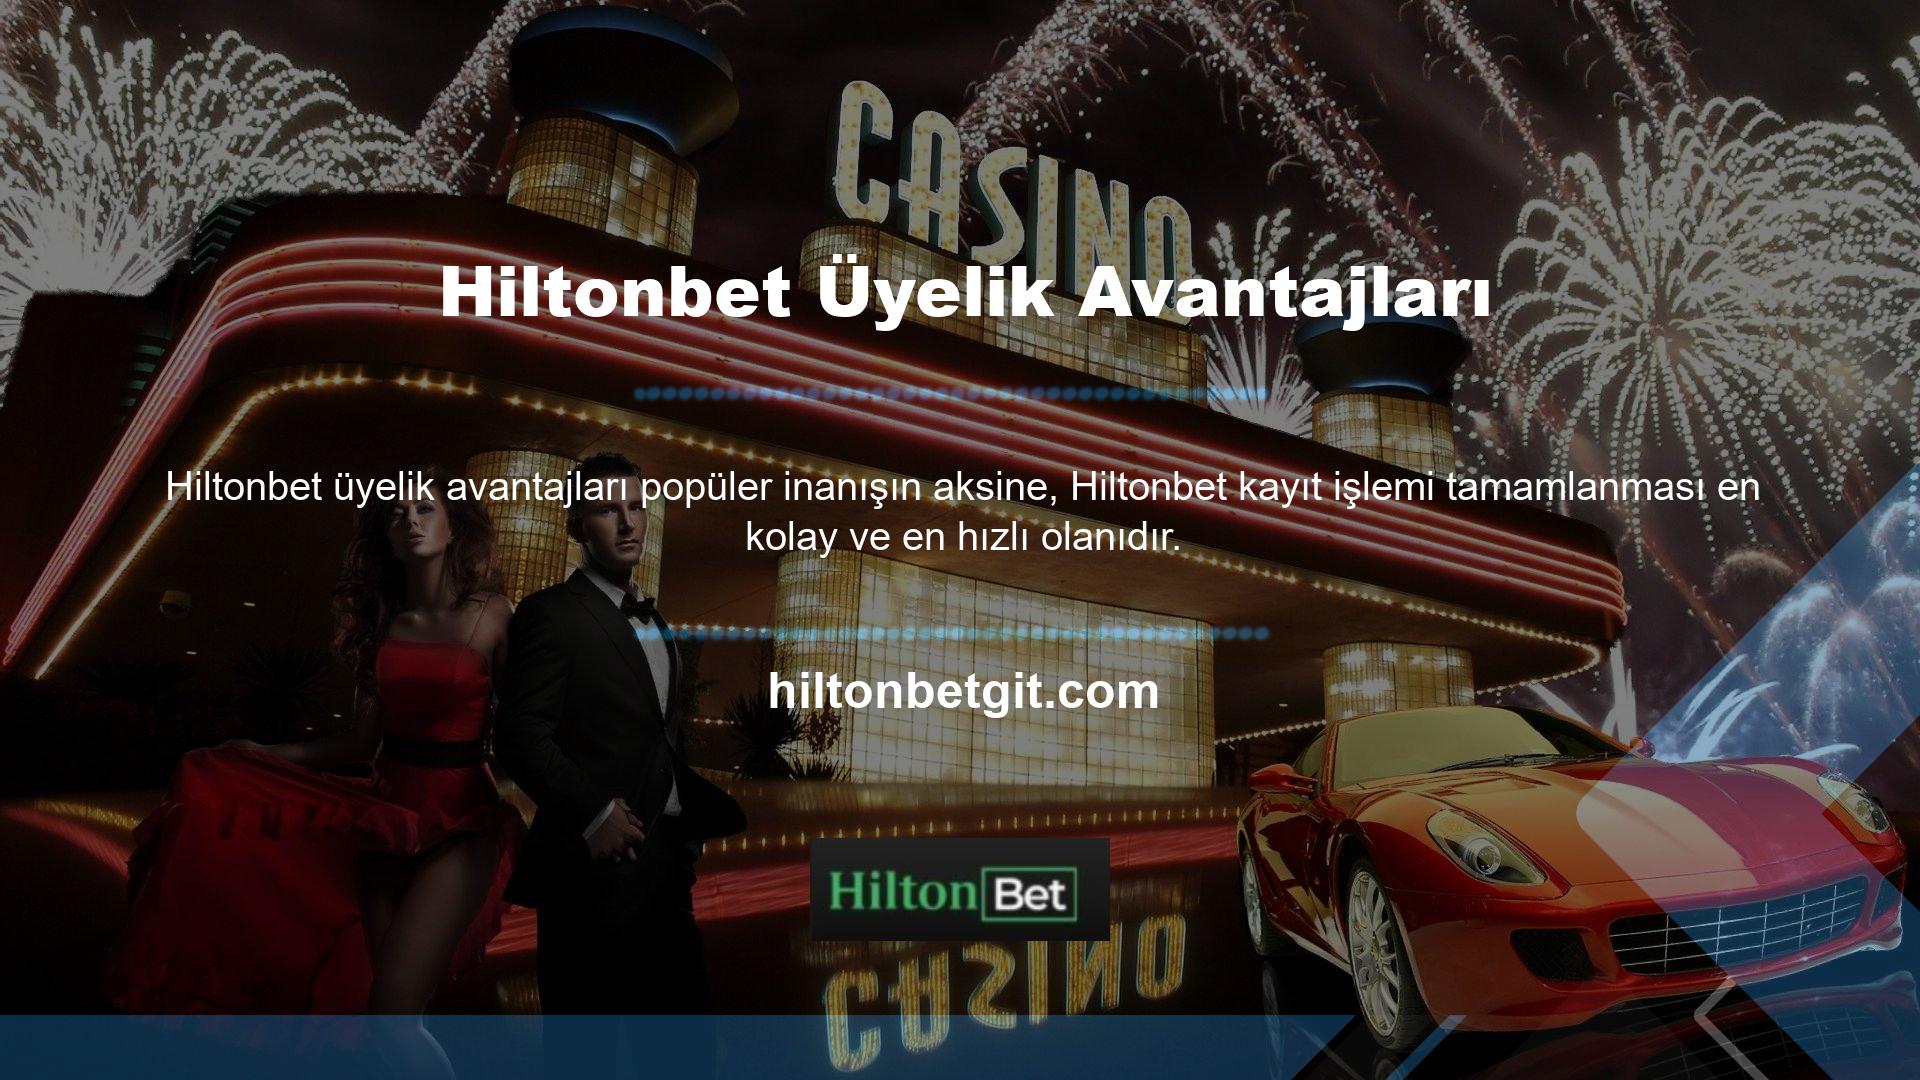 Hiltonbet online casino sitesinin en büyük müşterilerinden biri olmak isteyen deneyimli oyuncular için sitedeki oyunların keyfini kesintisiz olarak devam ettirmek çok kolaydır